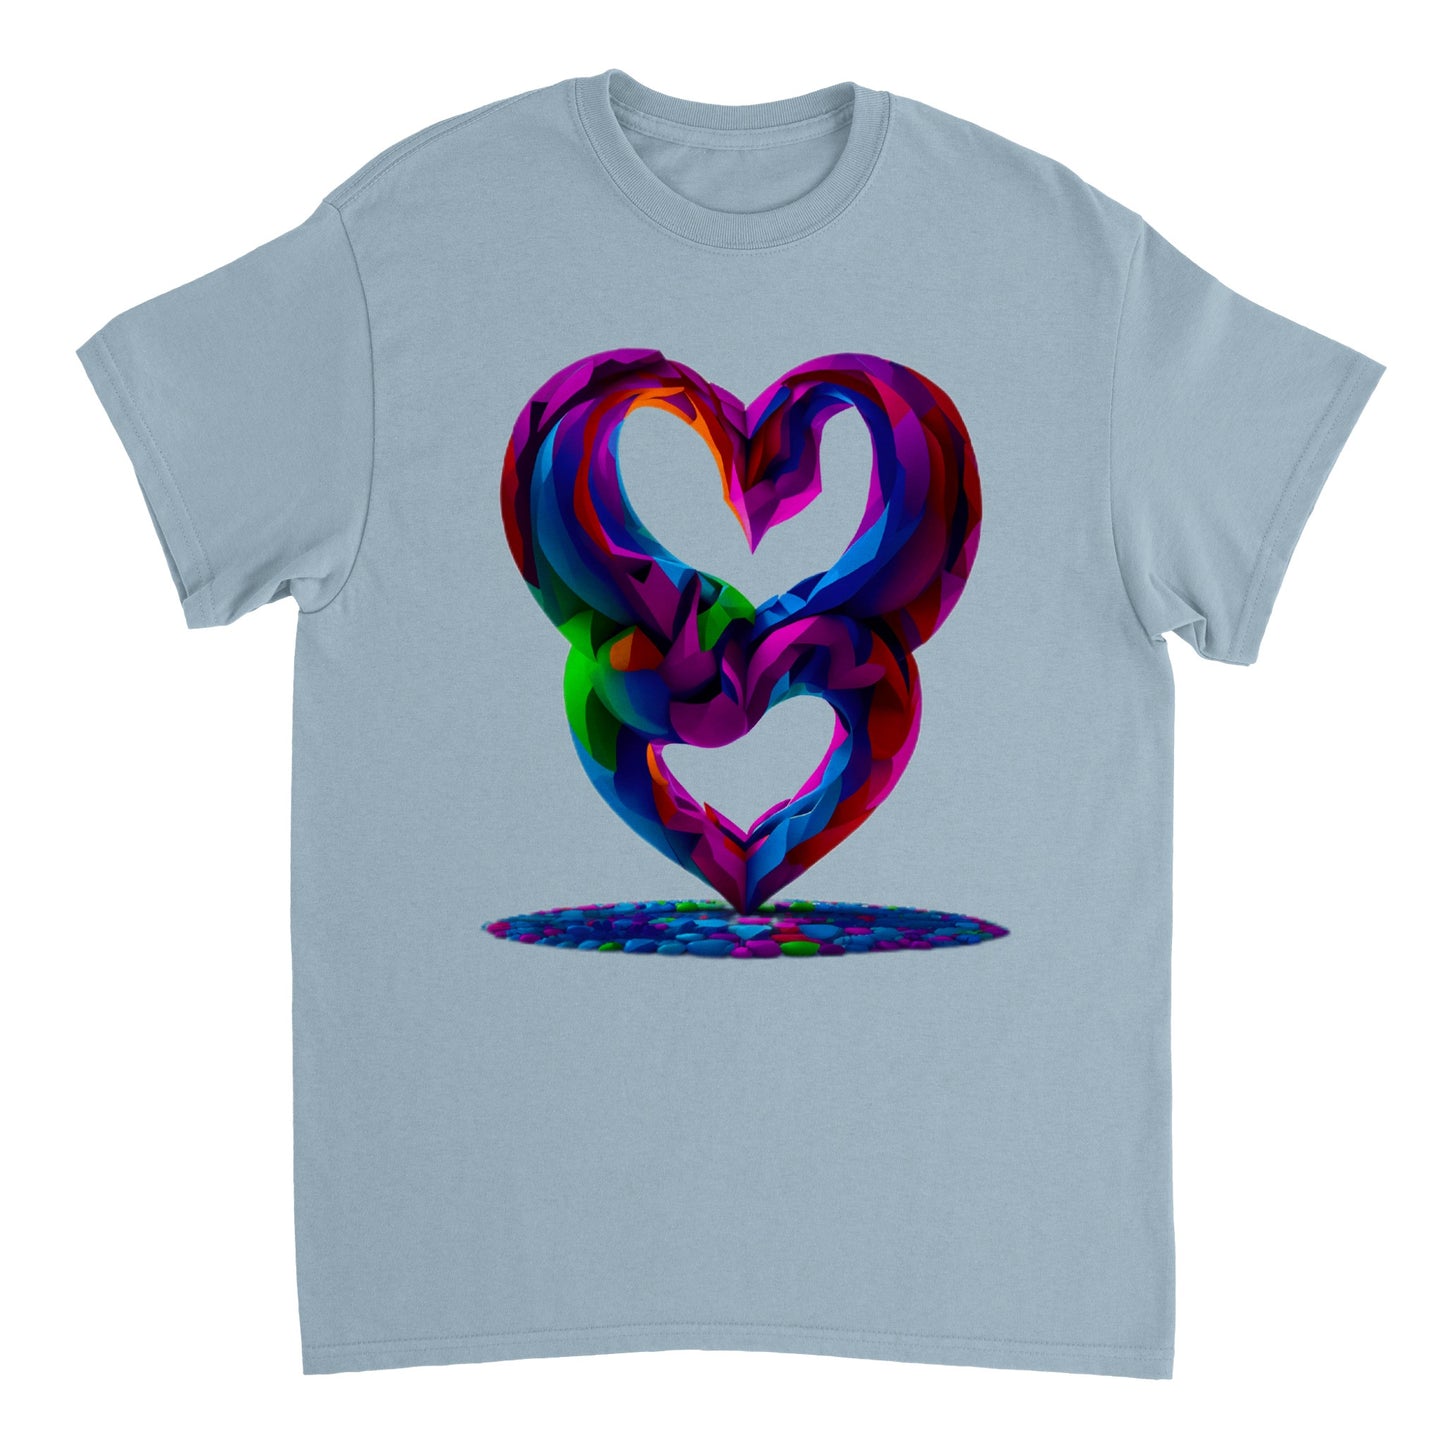 Love Heart - Heavyweight Unisex Crewneck T-shirt 29